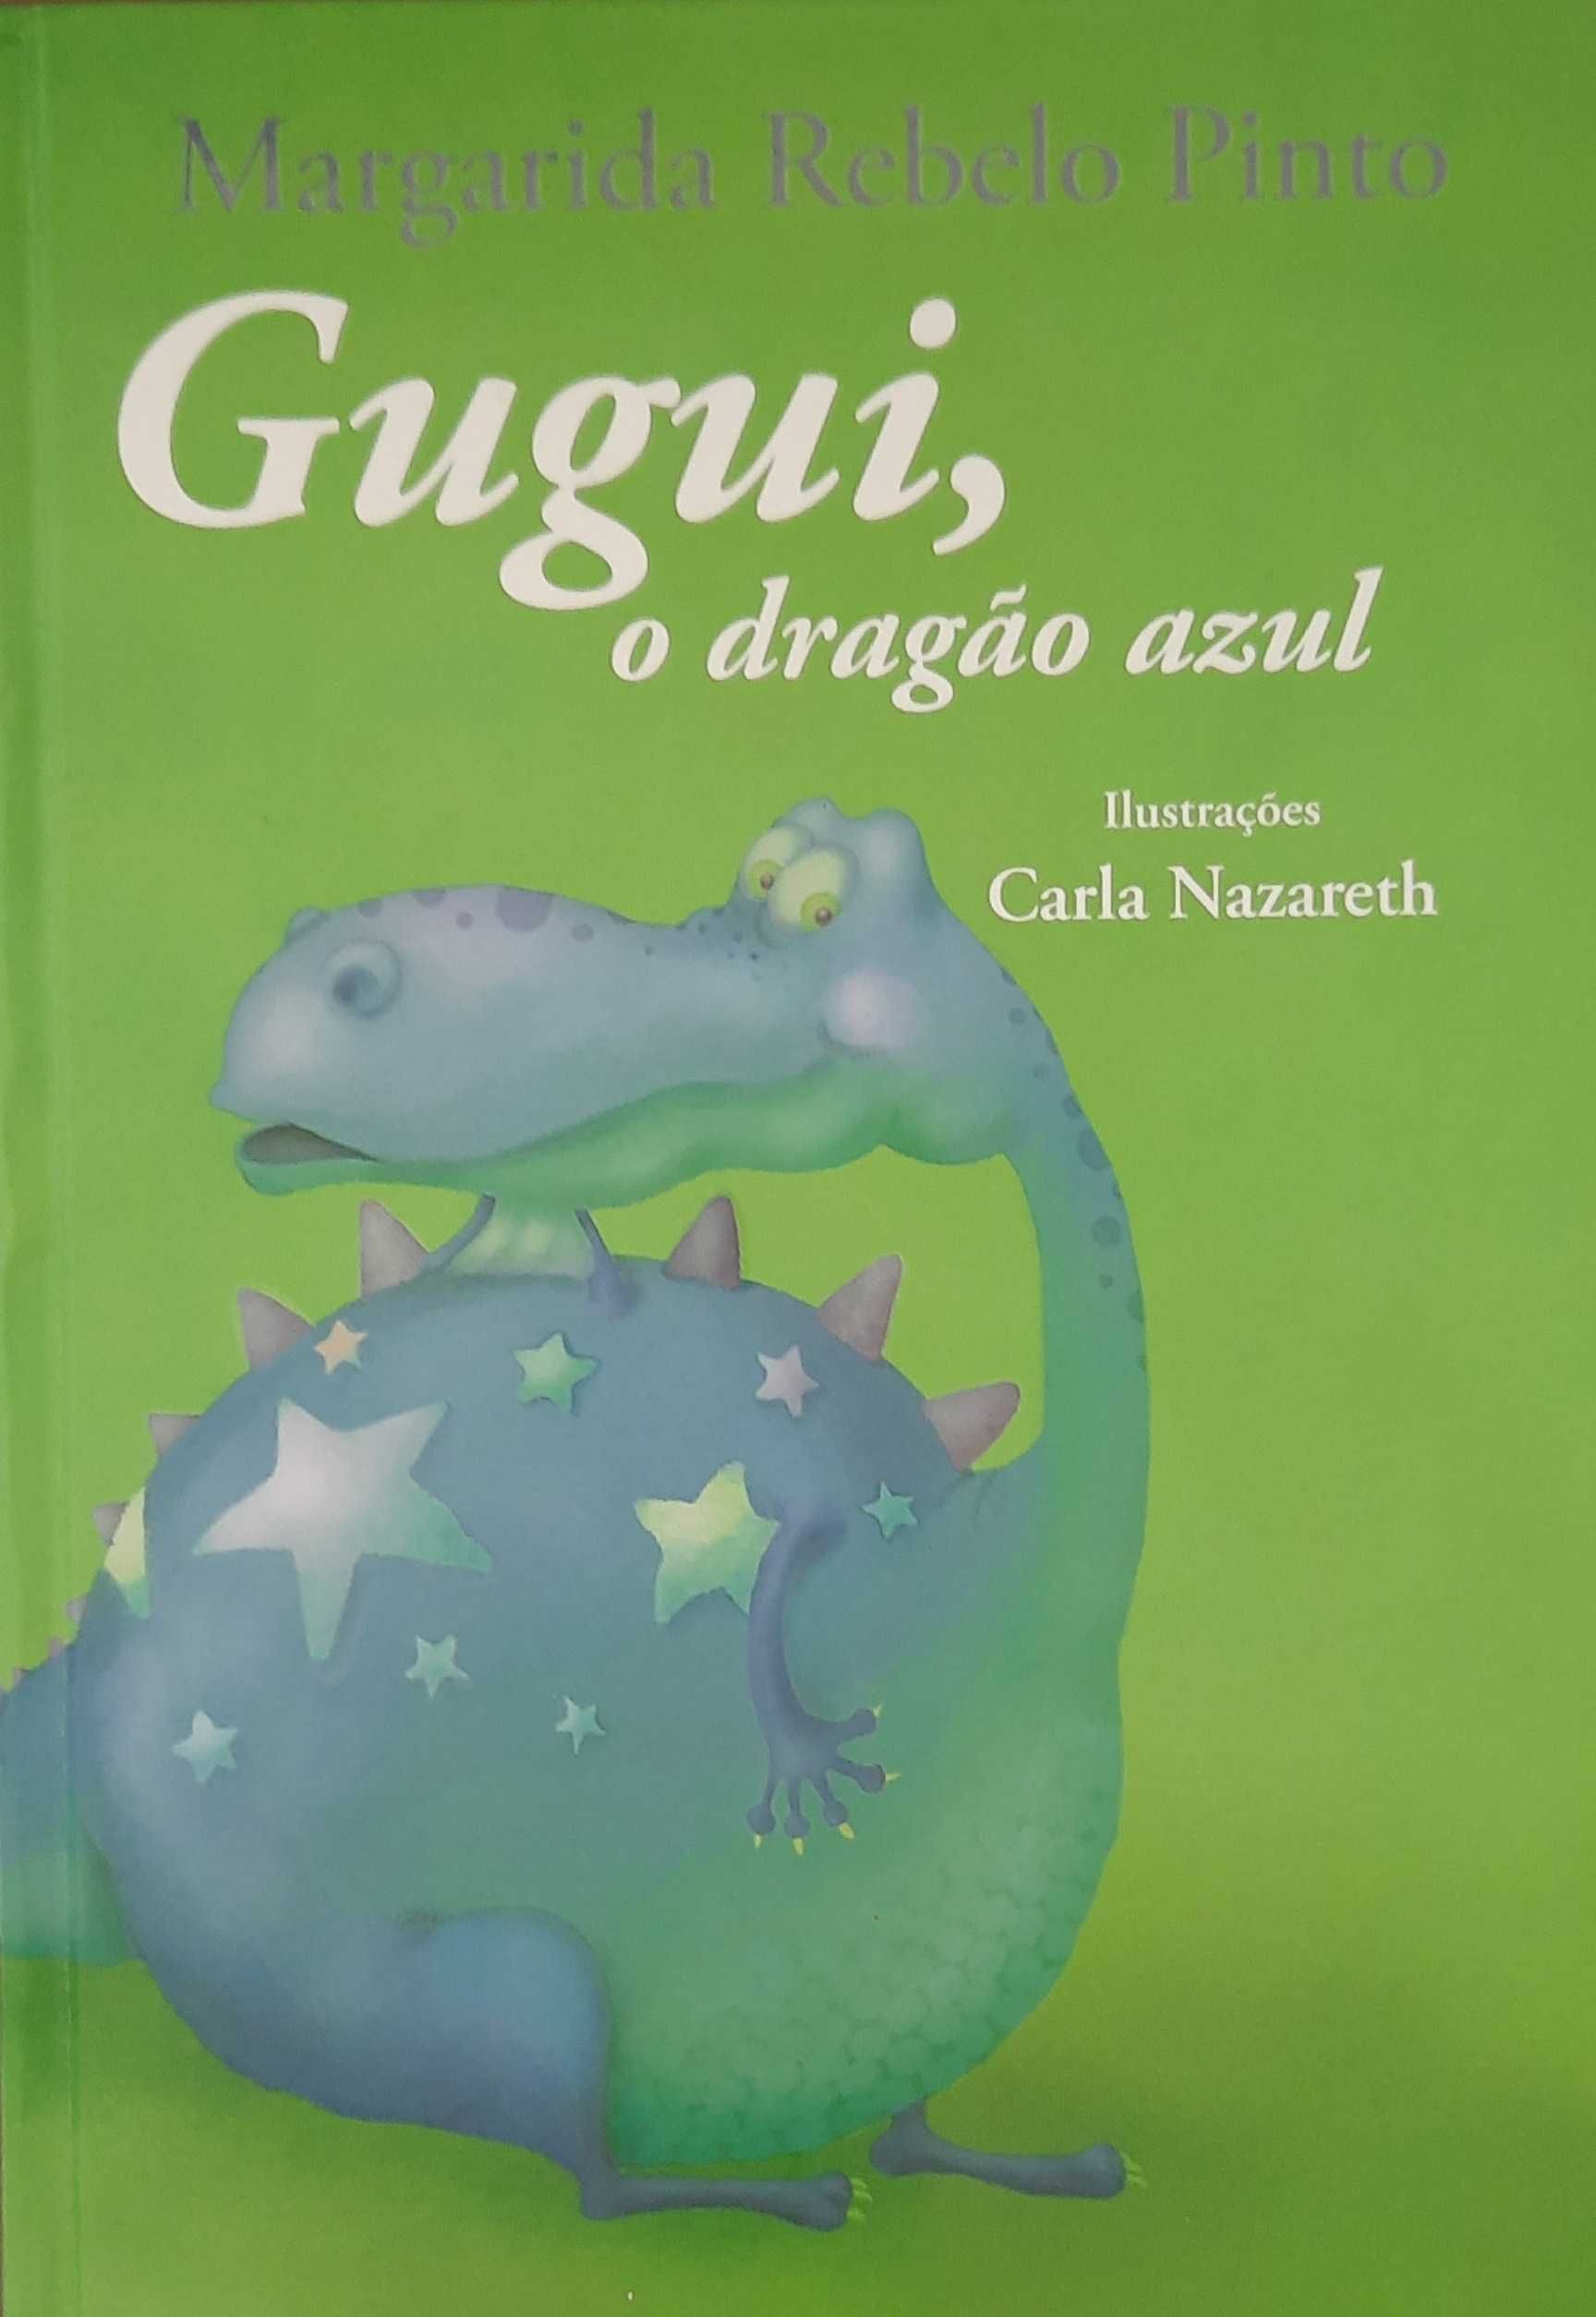 Gugui, o dragão azul de Margarida Rebelo Pinto